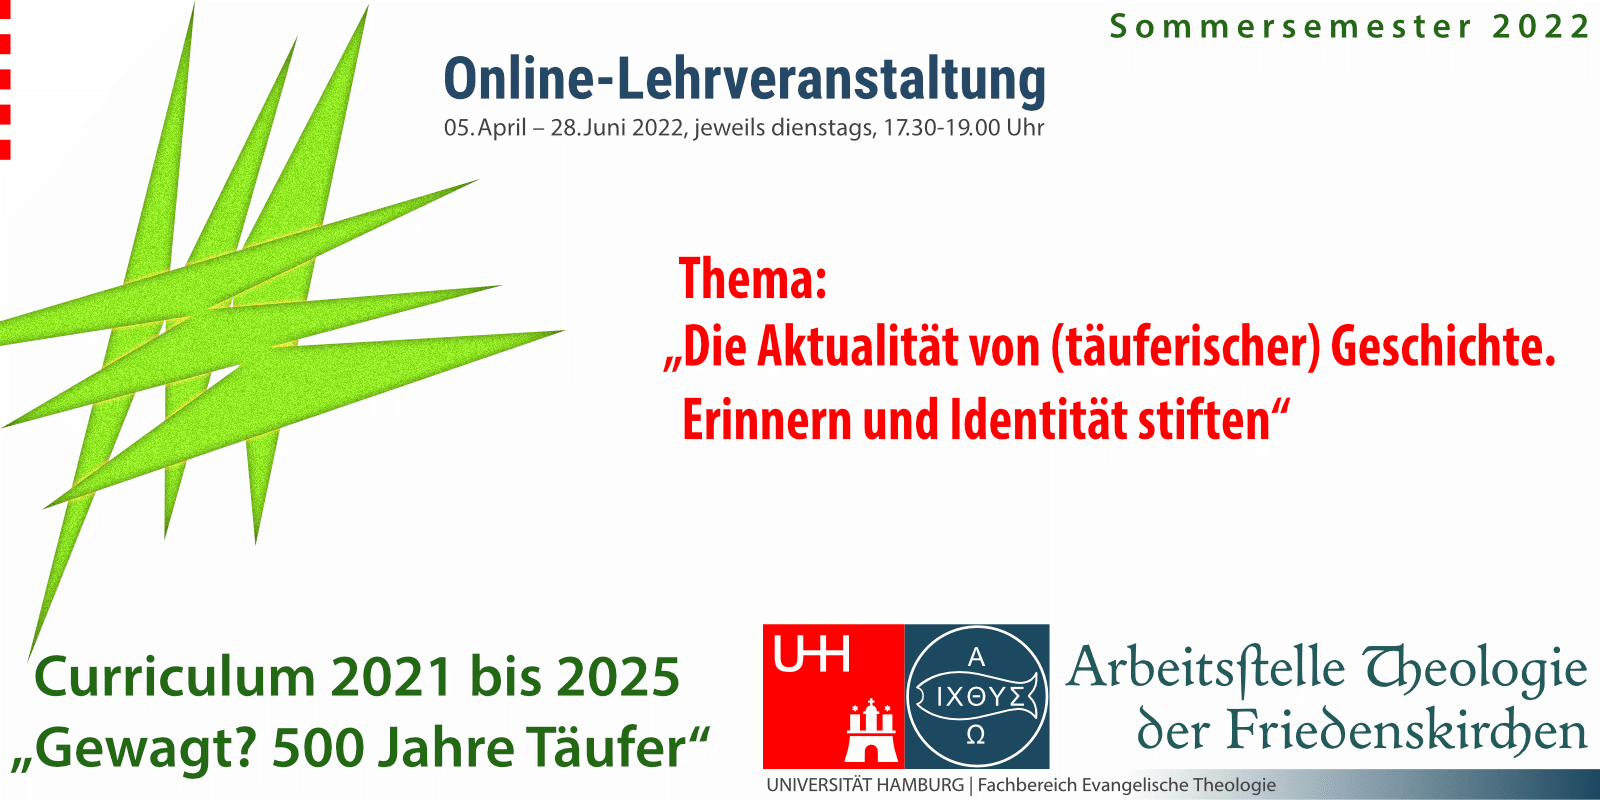 Arbeitsstelle Theologie der Friedenskirchen (ATF), Online-Lehrveranstaltung, Täufergeschichte.